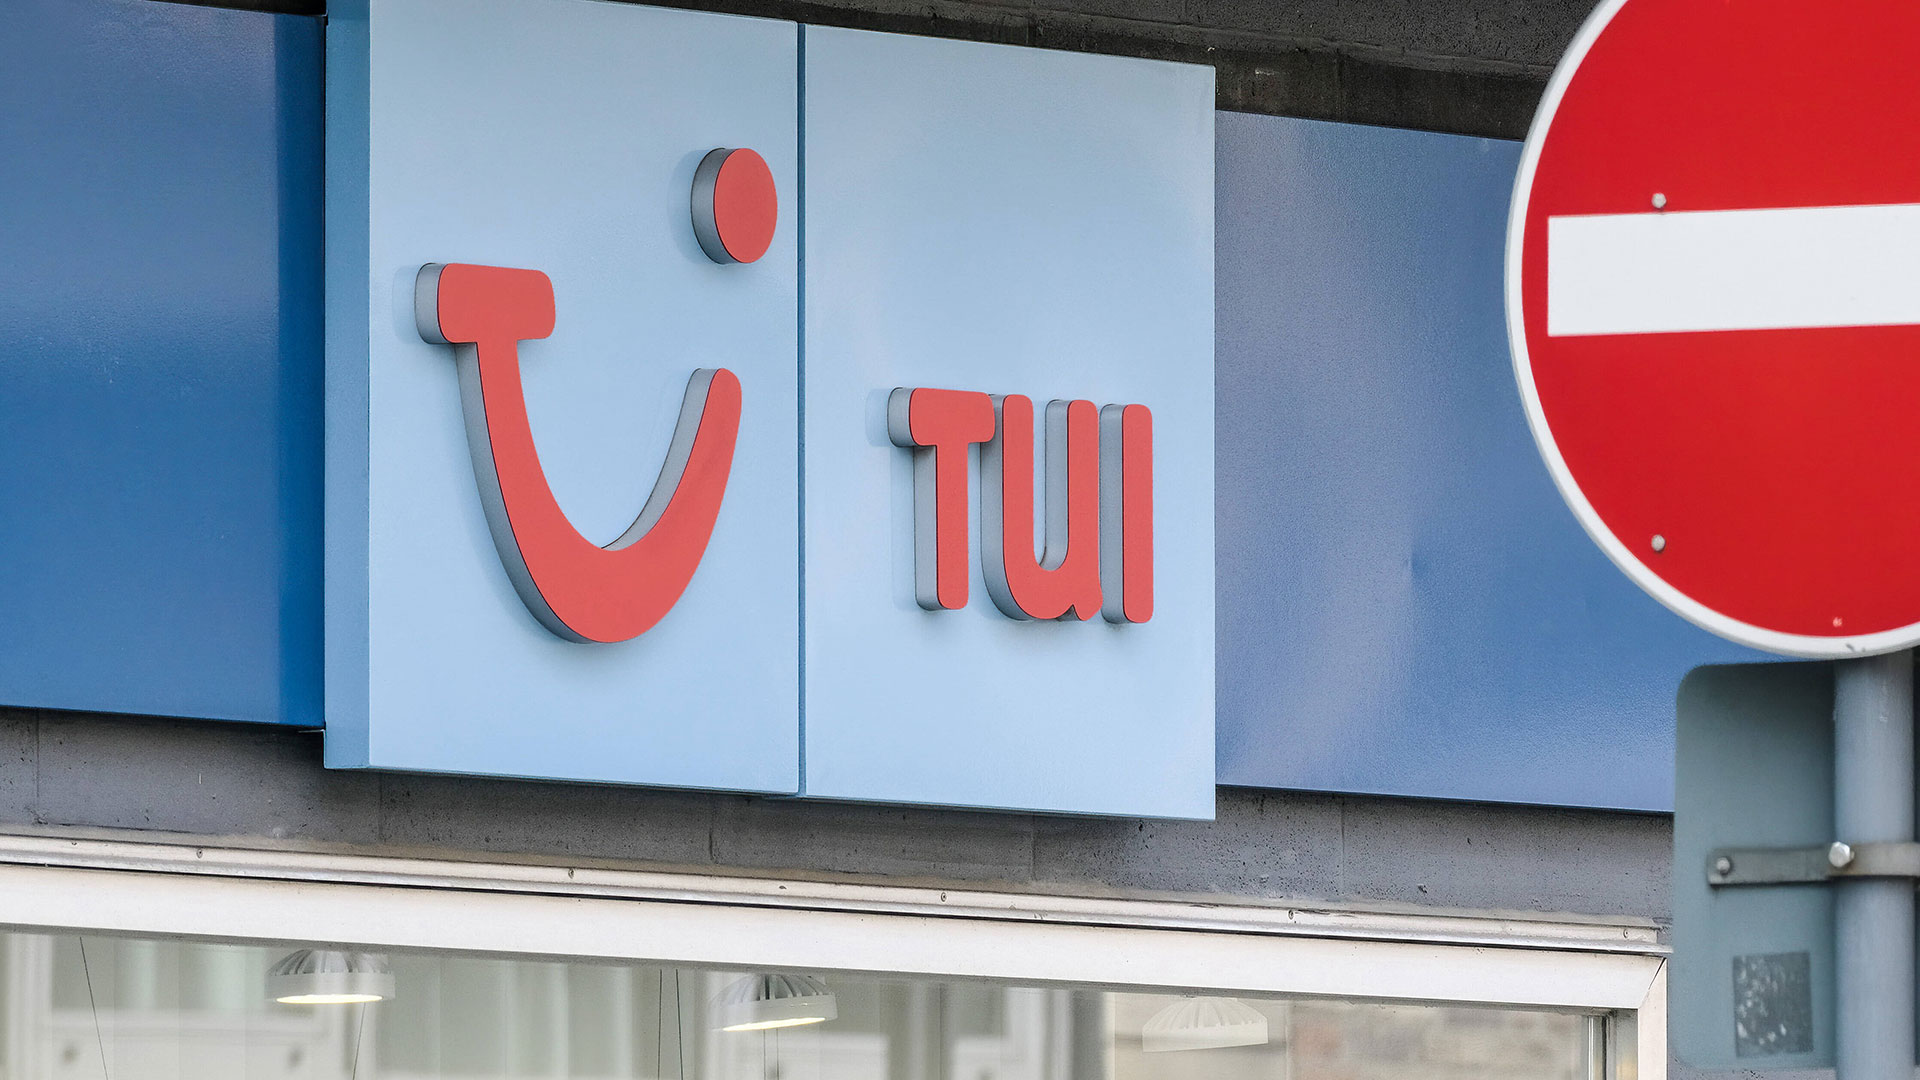 Kapitalerhöhung mies gelaufen – TUI&#8209;Aktie sackt auf neues Allzeittief (Foto: Michael Gstettenbauer/IMAGO)